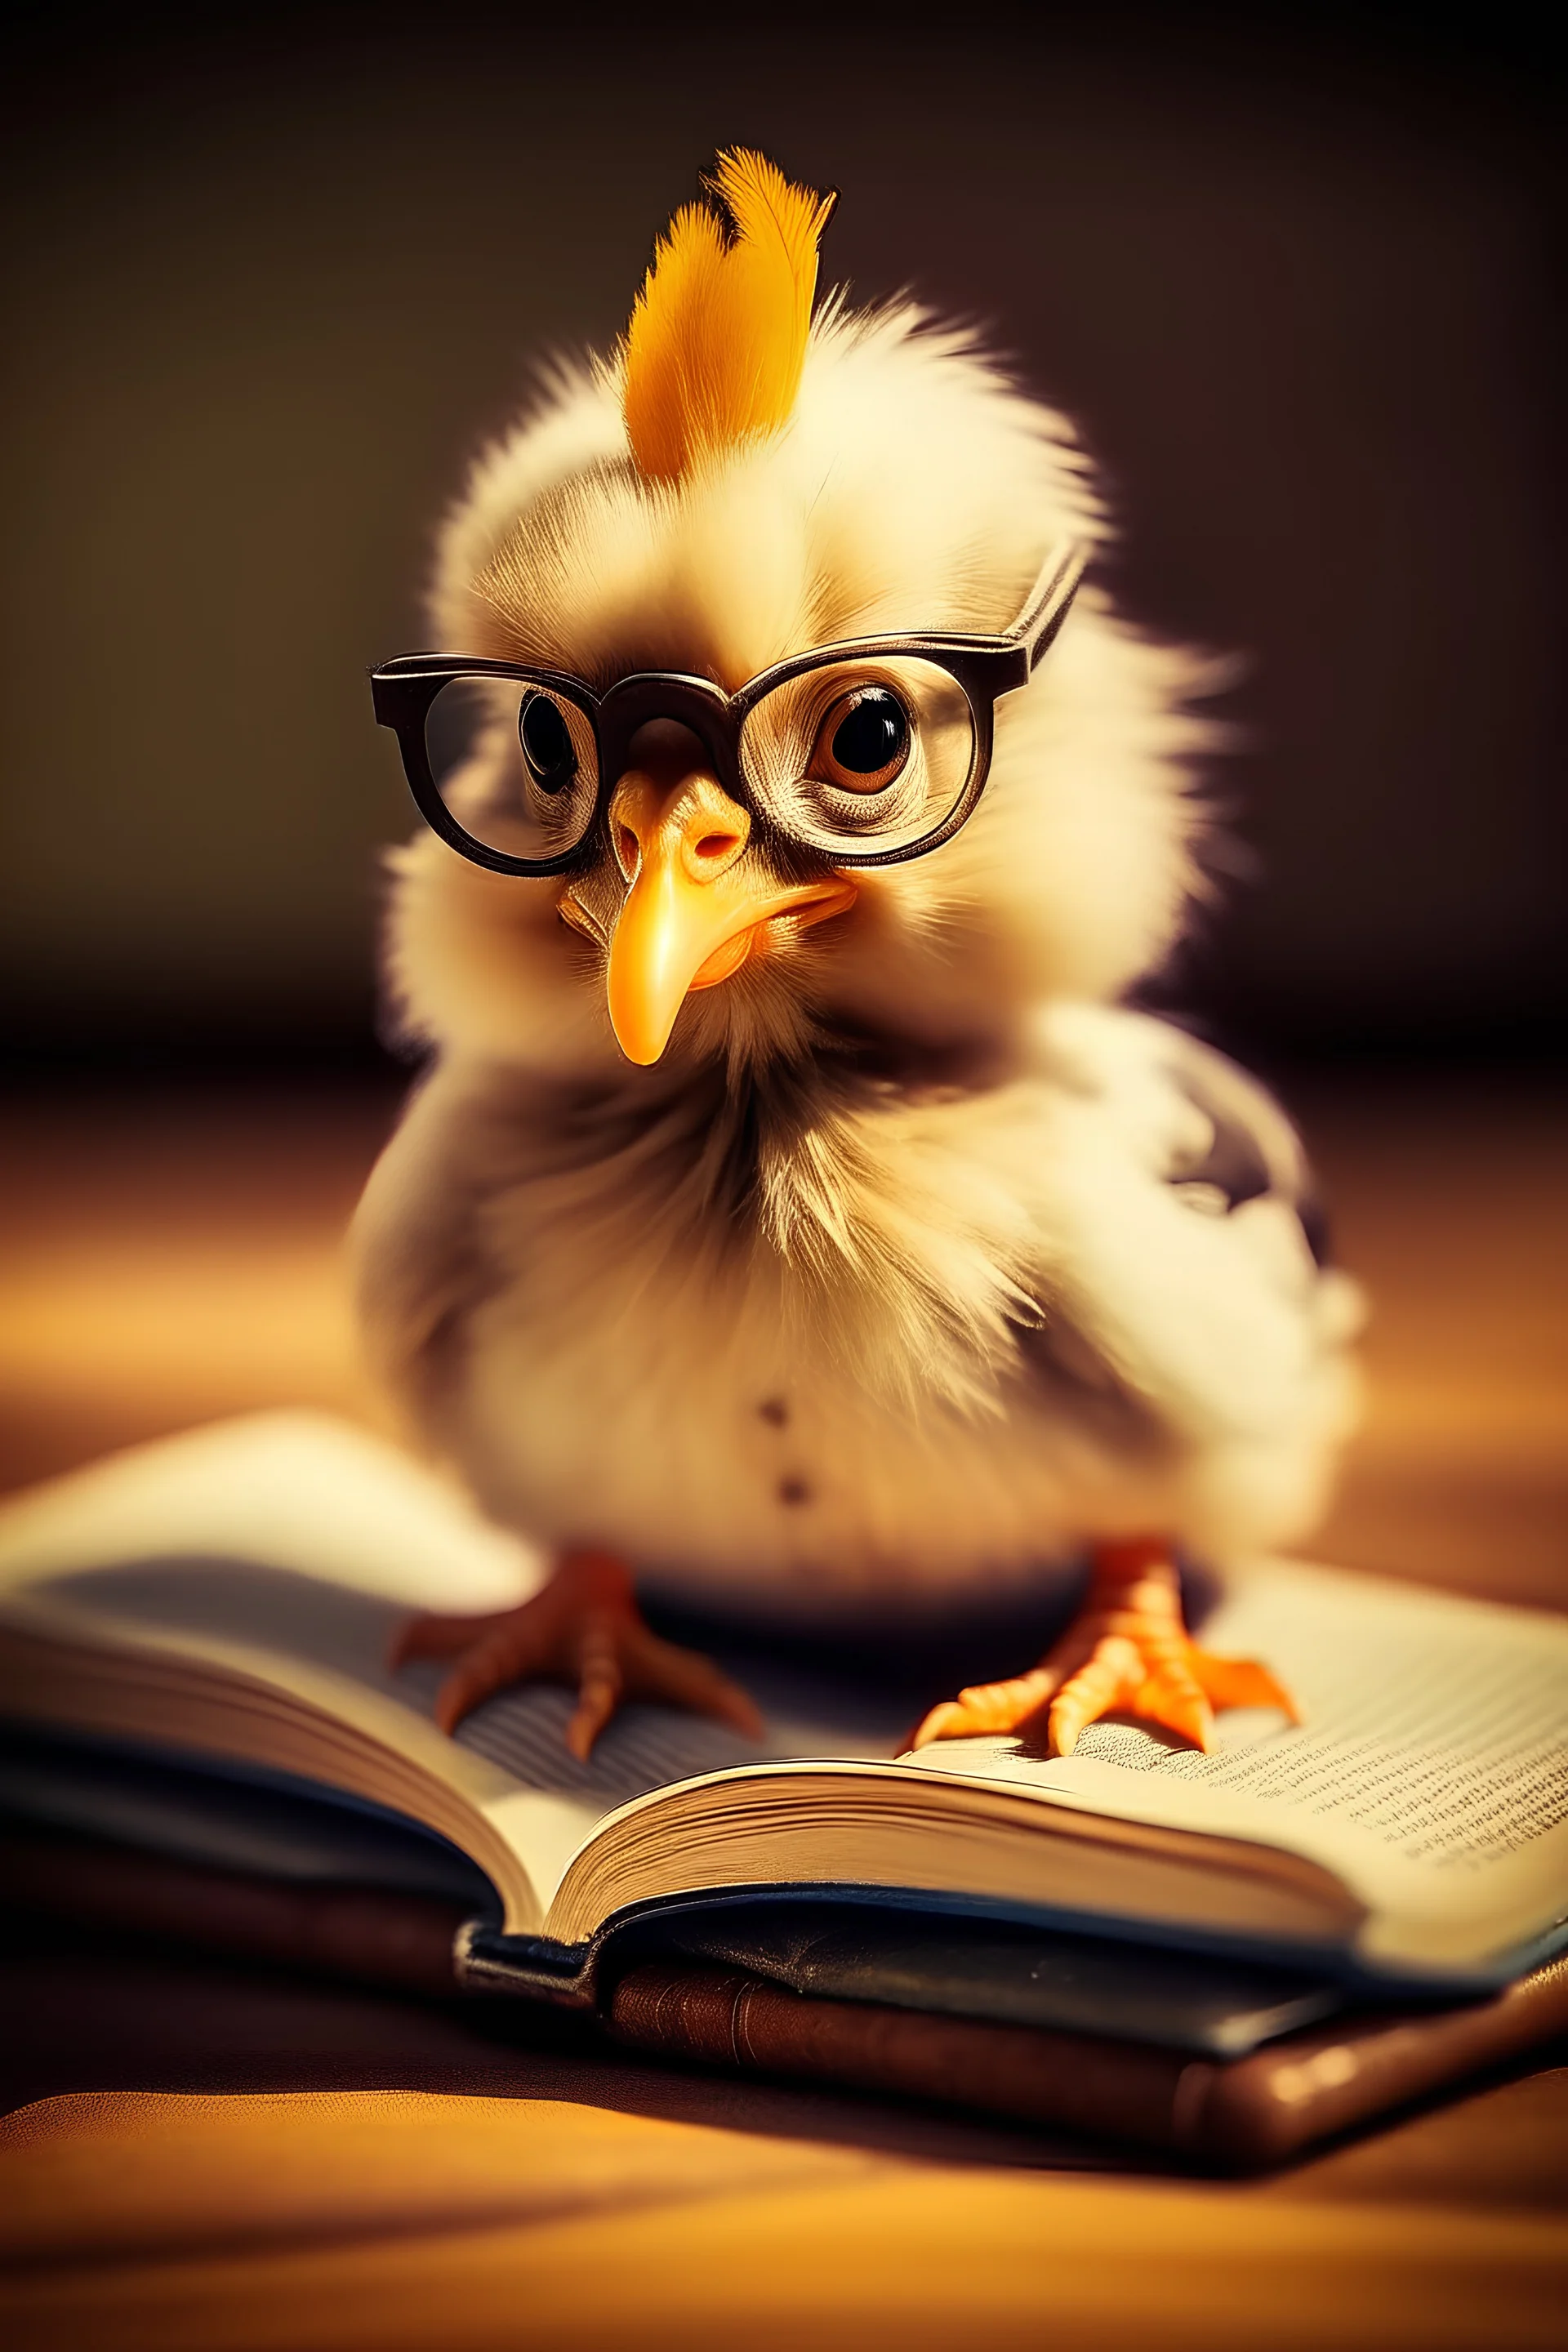 صورة صغيرة الدجاجة وصغير الحجم وهو للجامعة ويحمل في يده كتاب